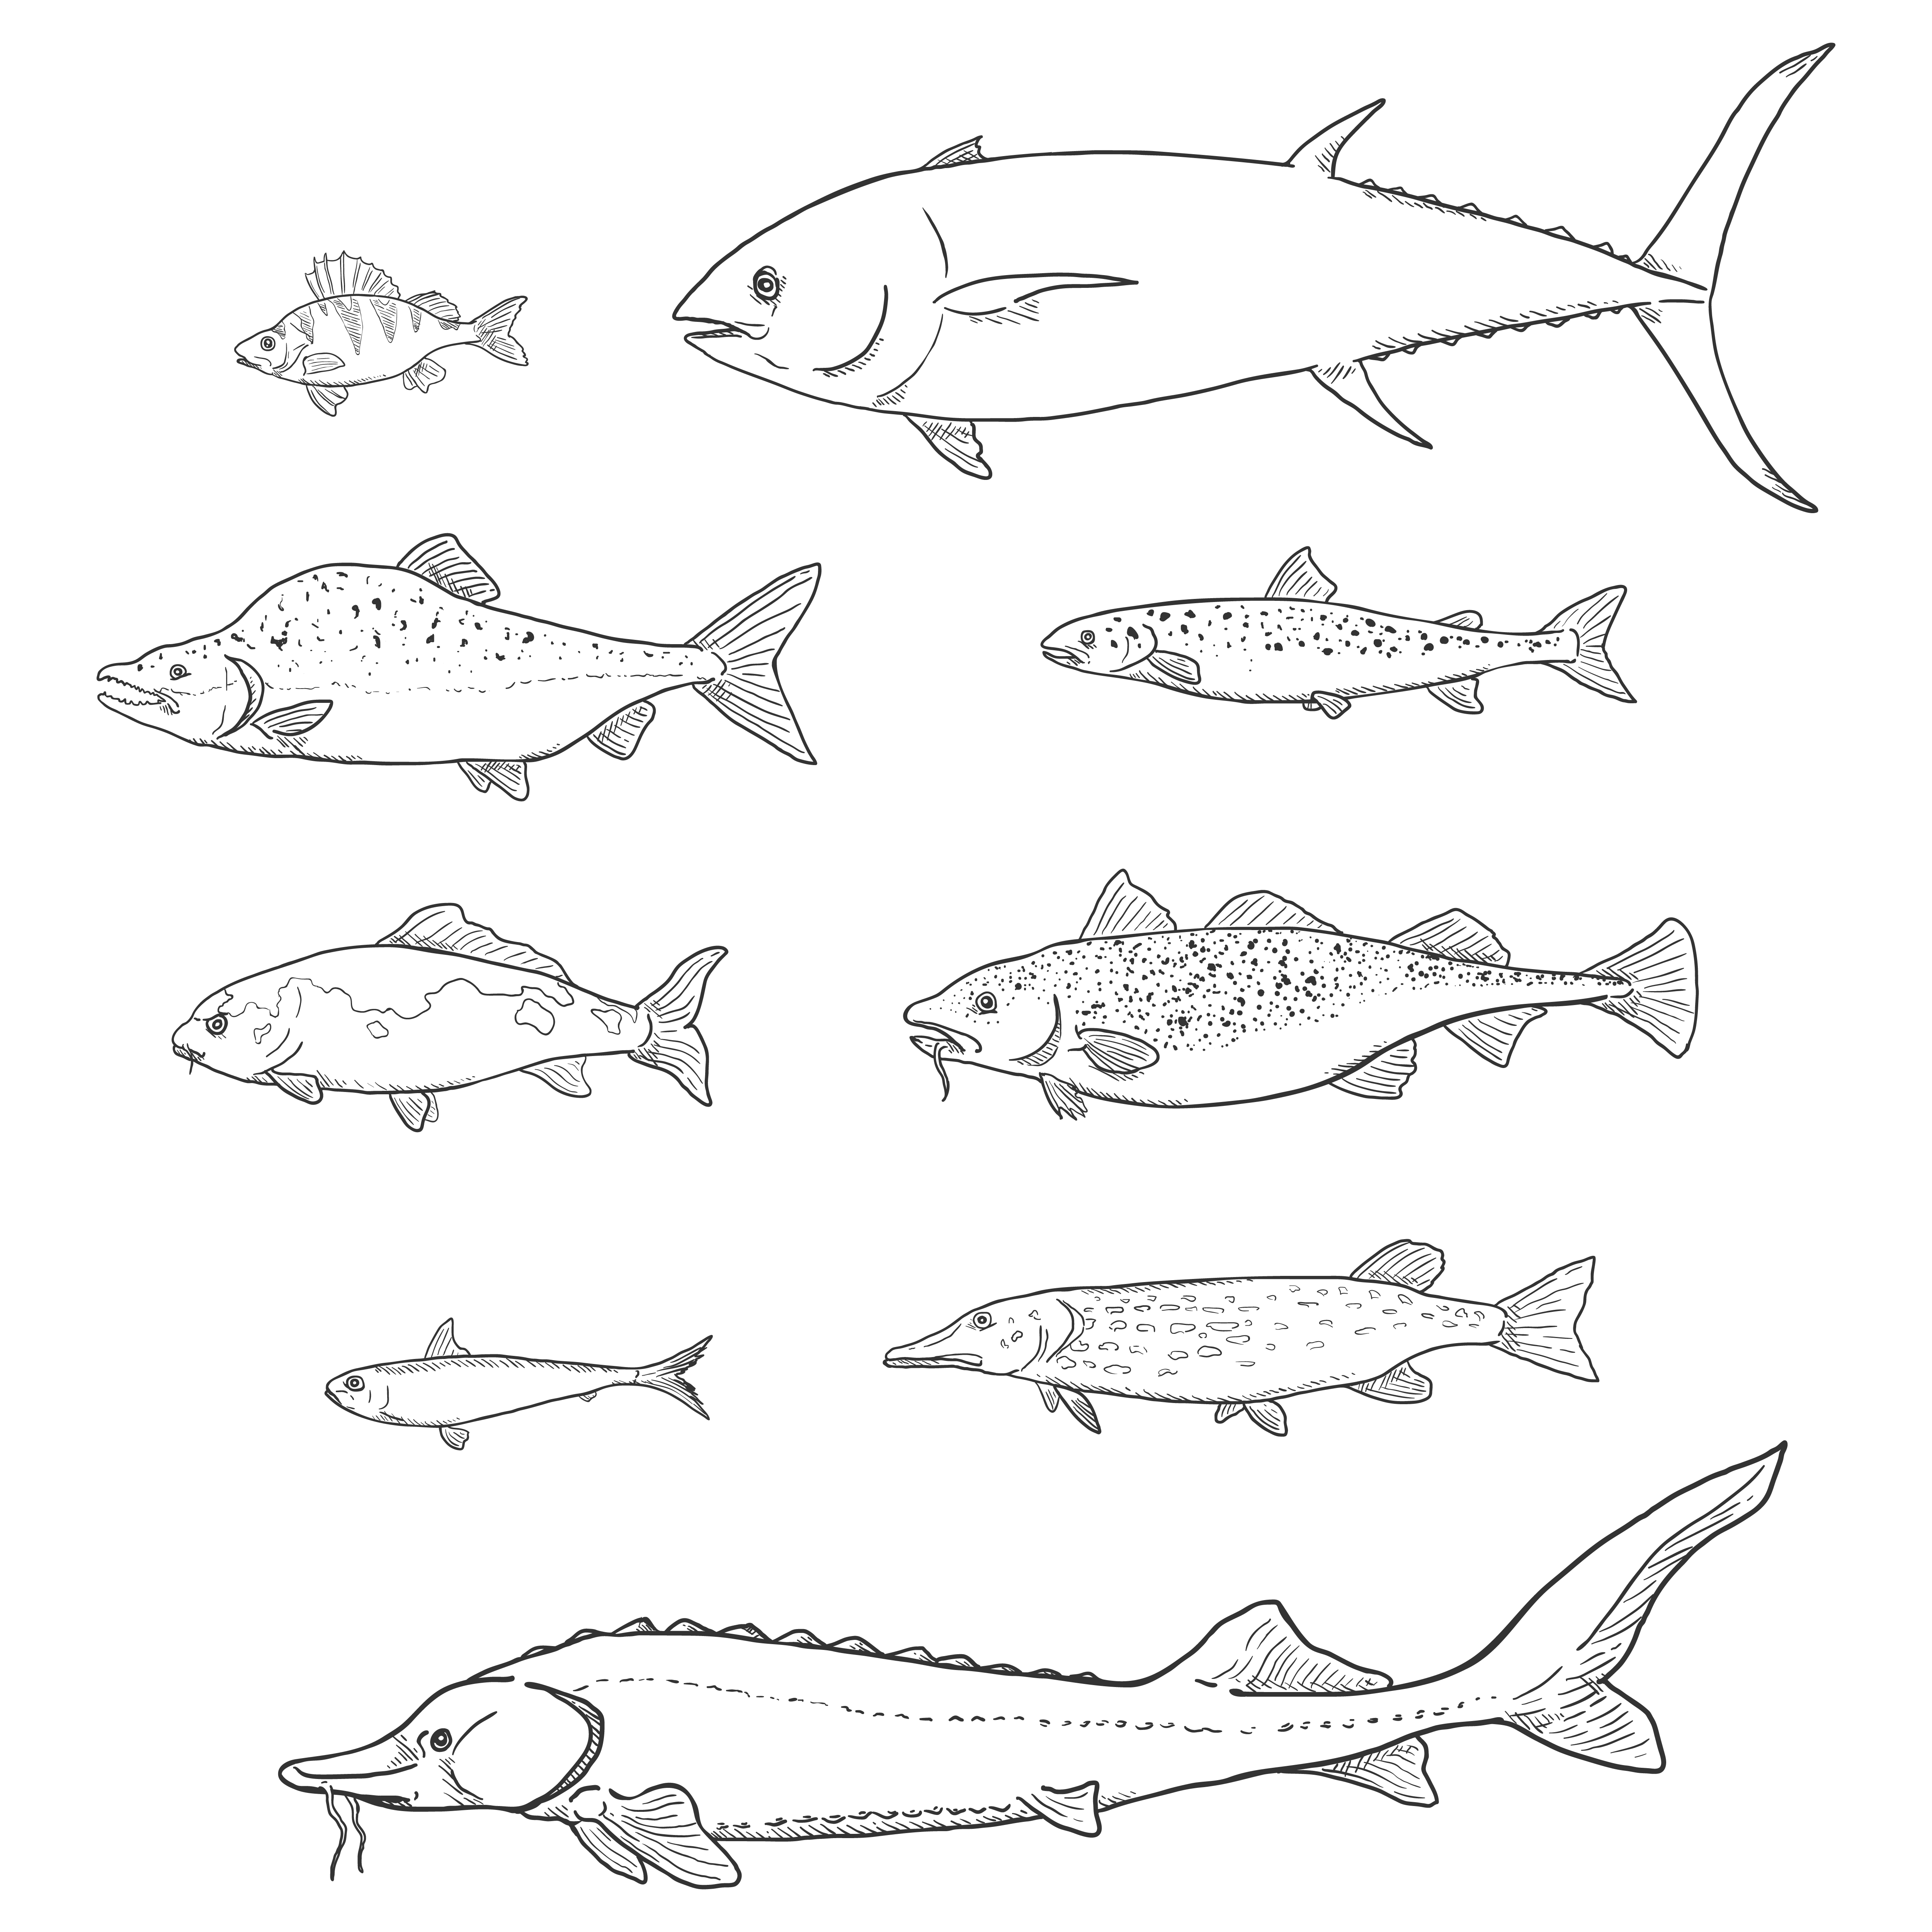  fish sketch